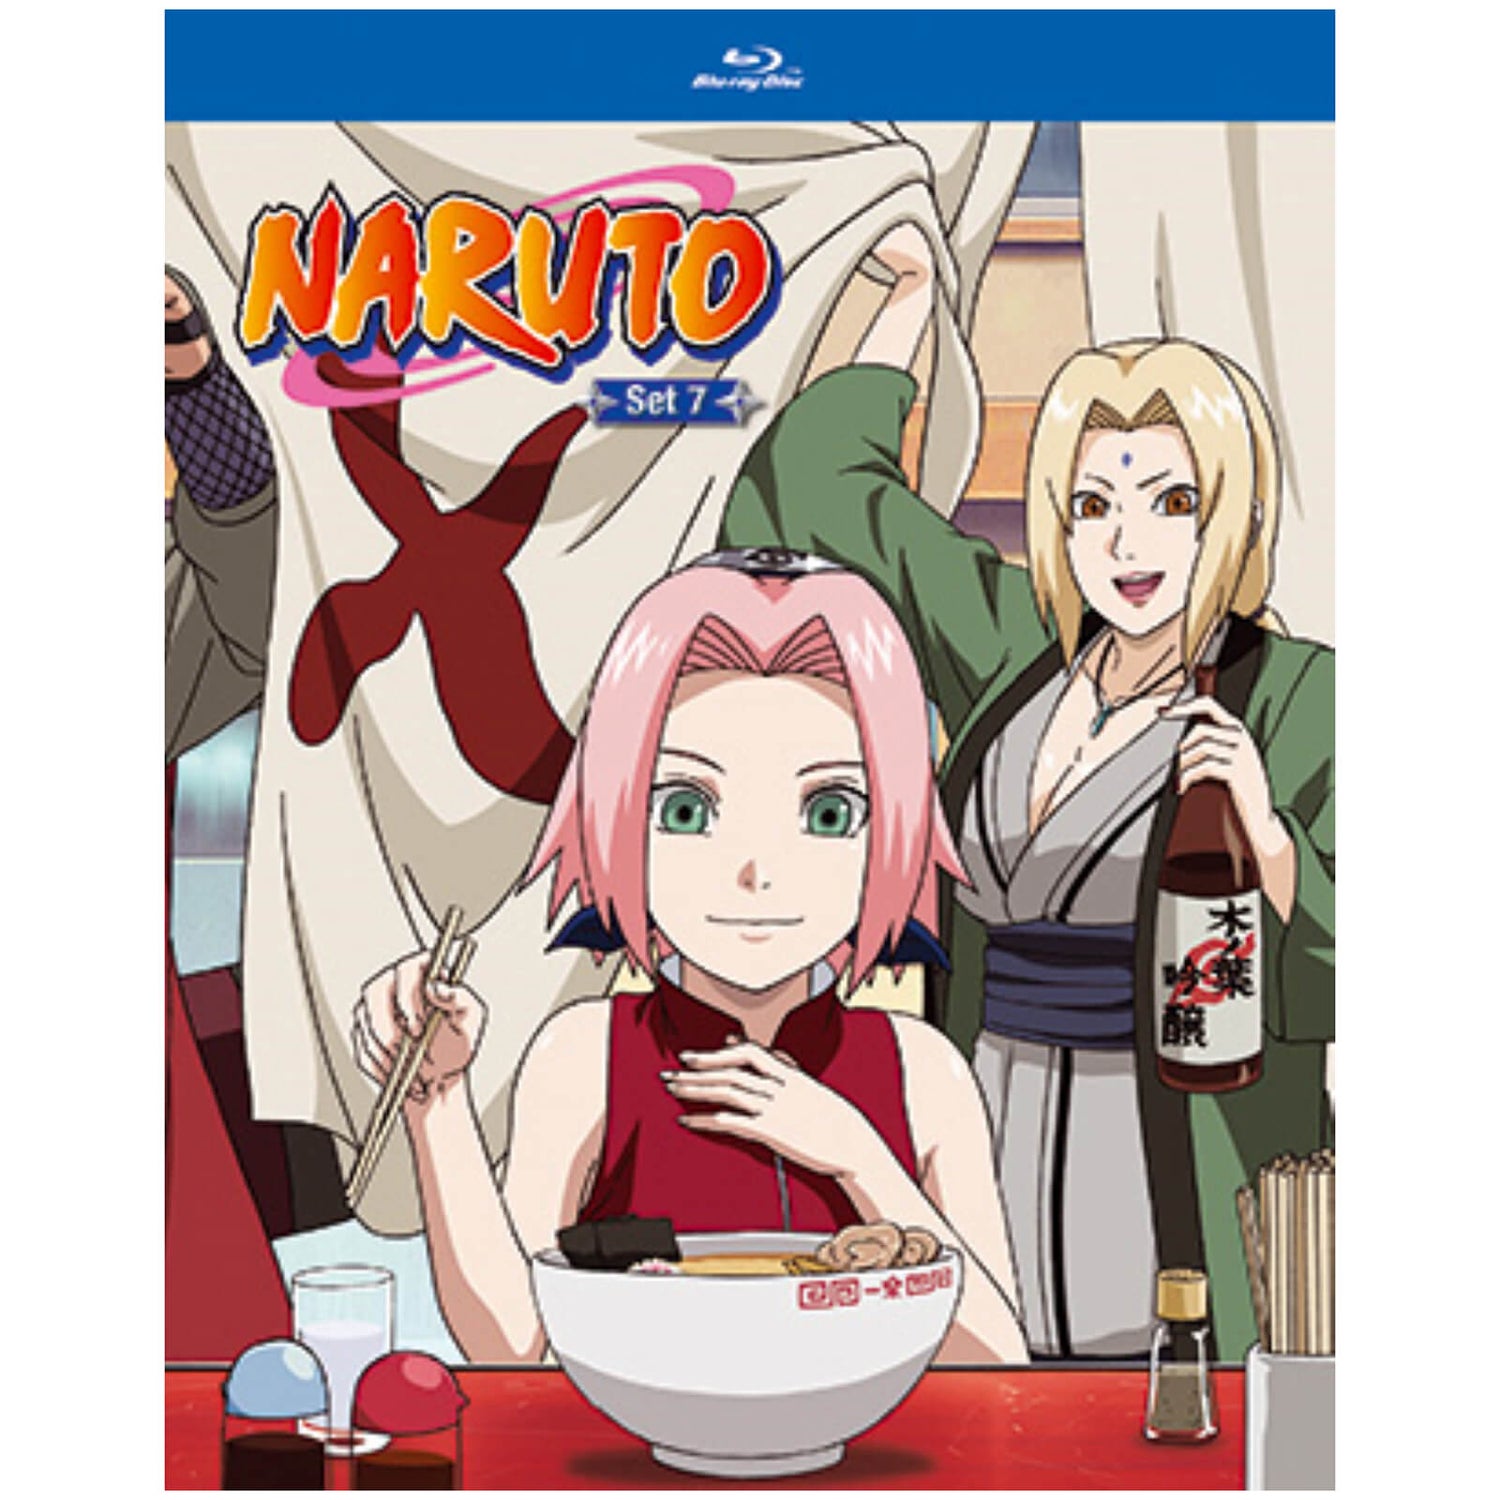 Naruto: Set 7